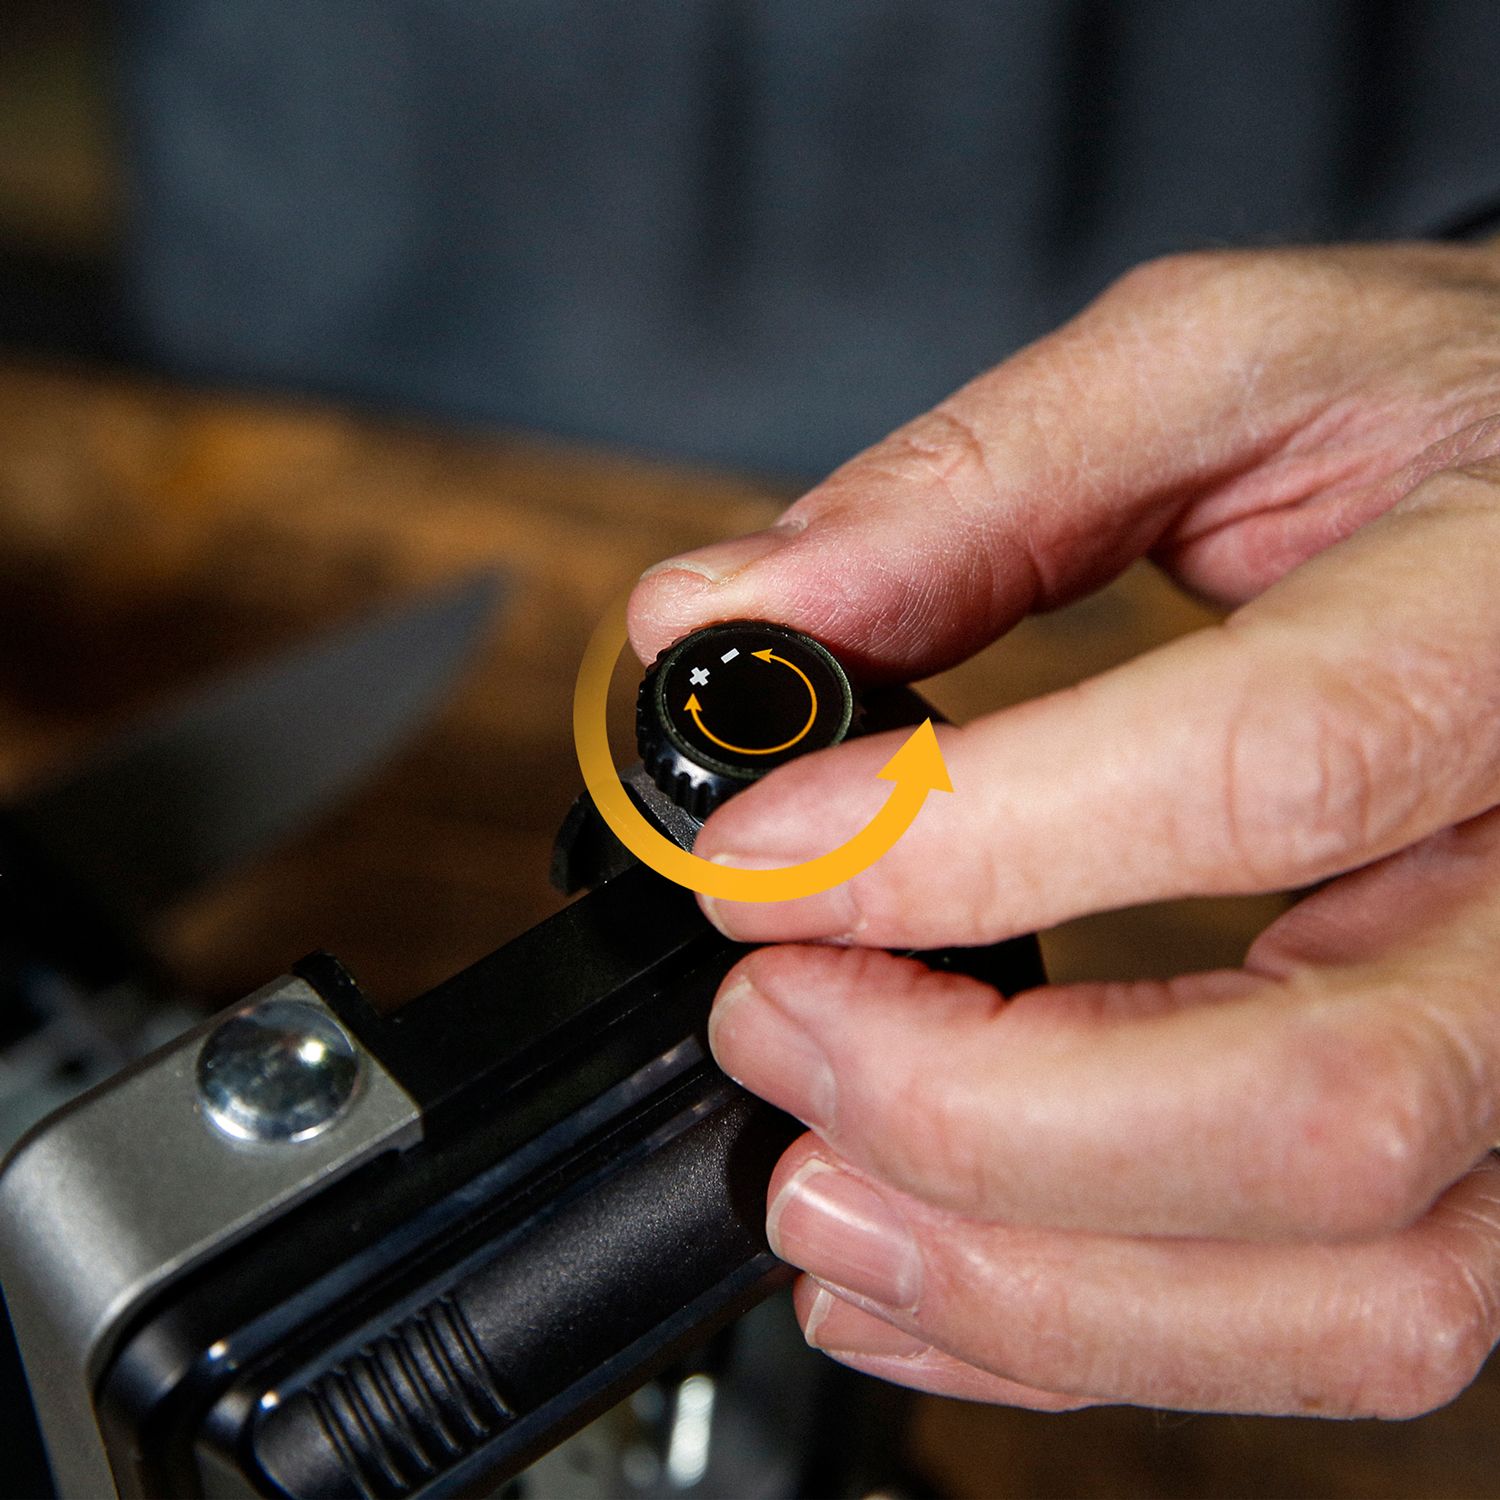 Work Sharp Professional Precision Adjust Knife Sharpener Review